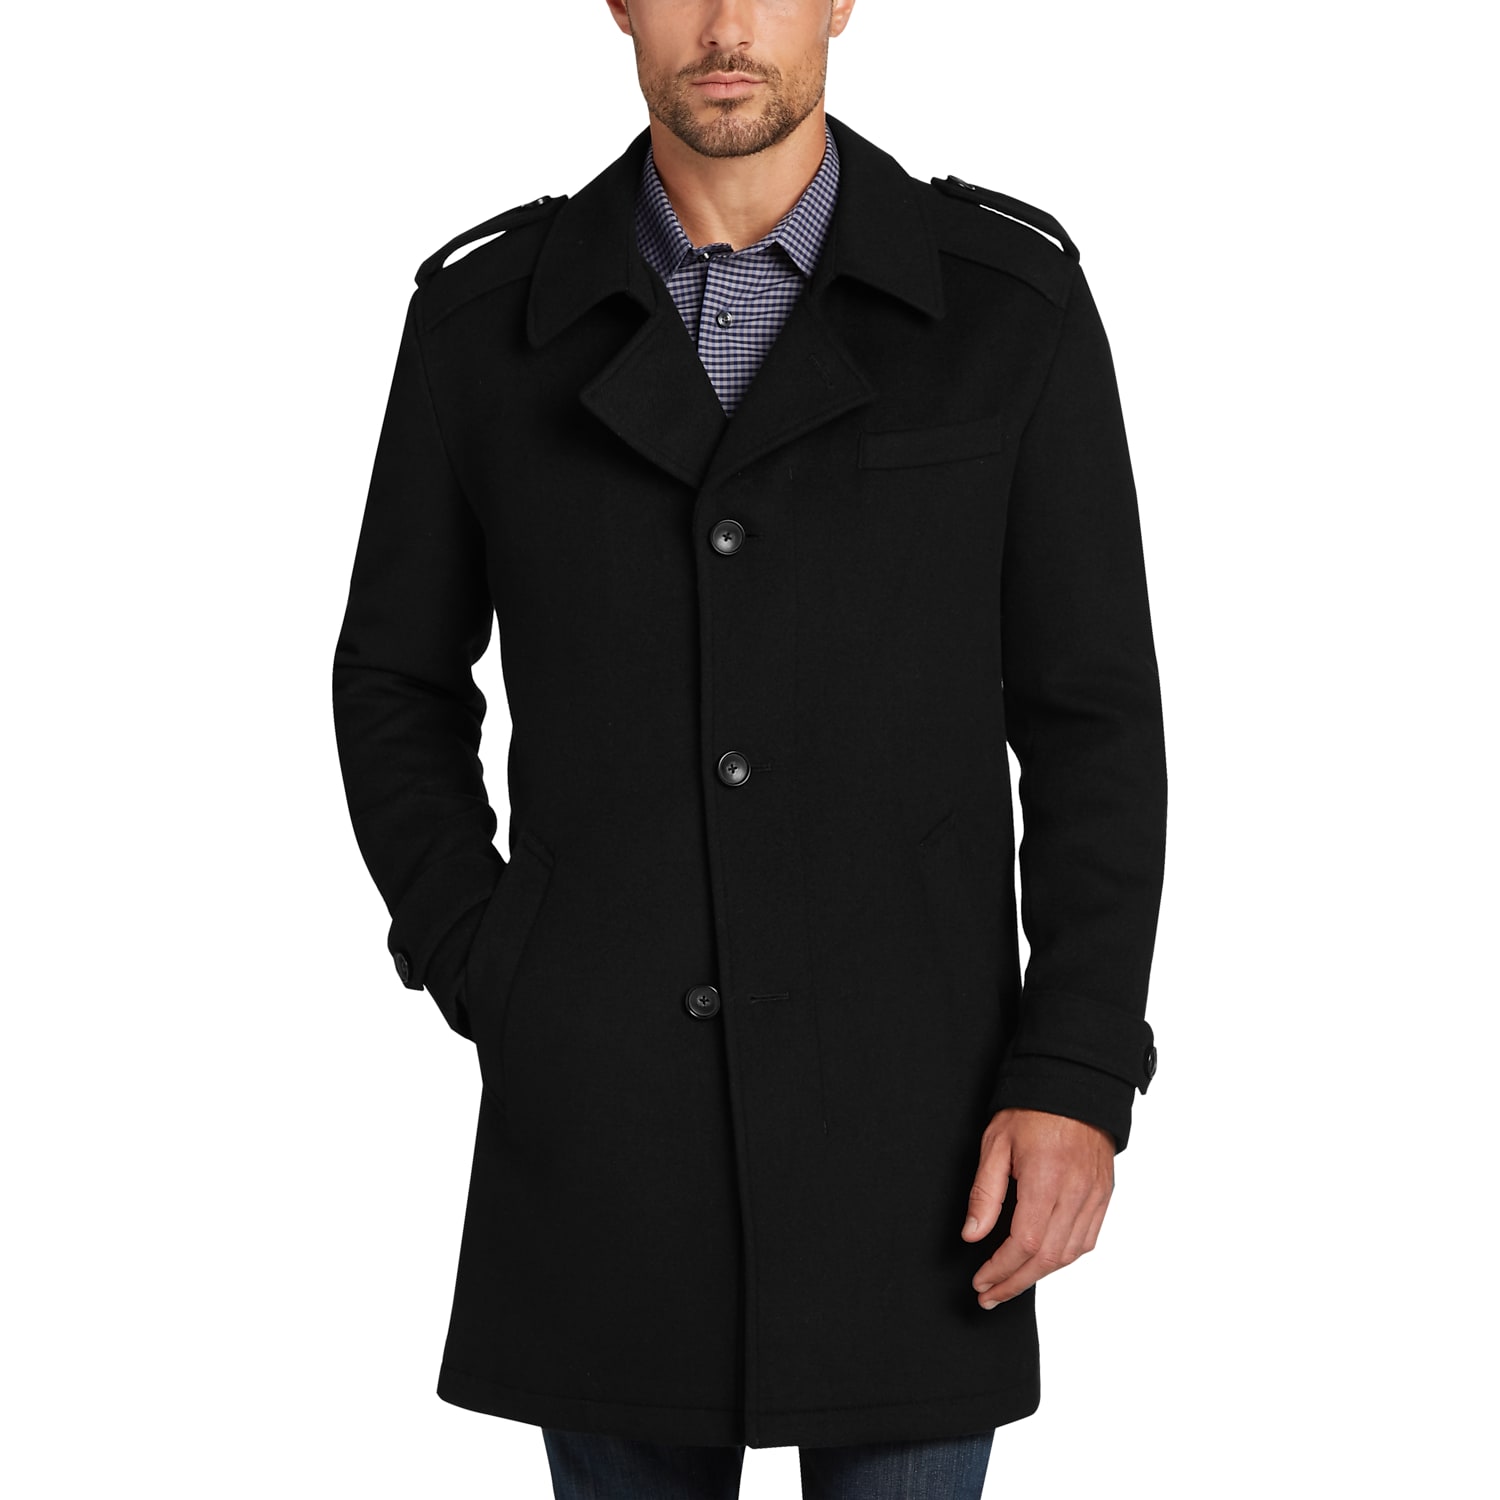 Men's Clothing & Accessories: Men's Professional Coats